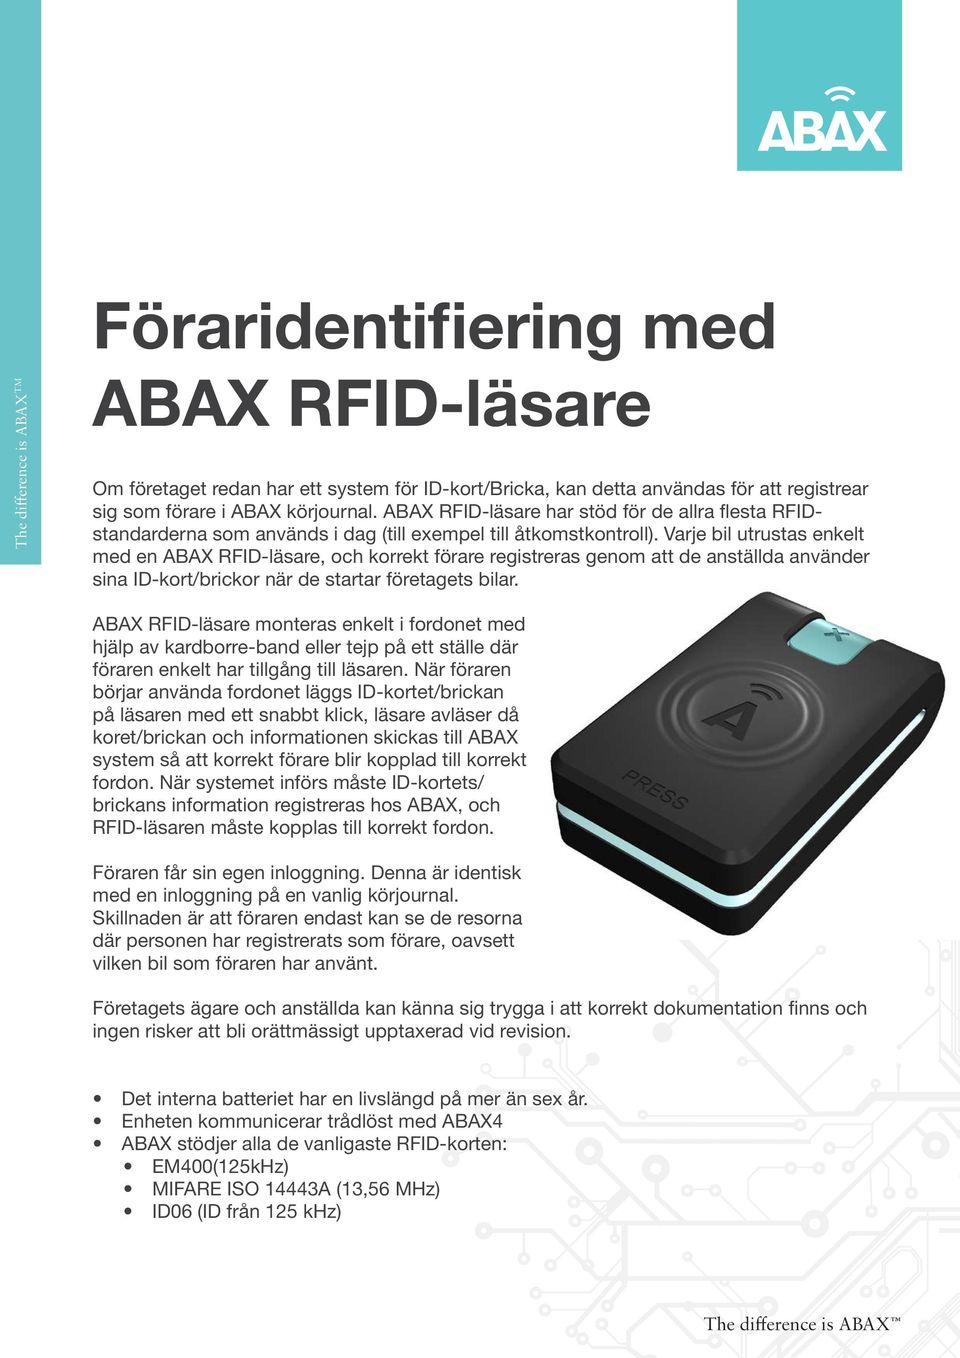 Varje bil utrustas enkelt med en ABAX RFID-läsare, och korrekt förare registreras genom att de anställda använder sina ID-kort/brickor när de startar företagets bilar.